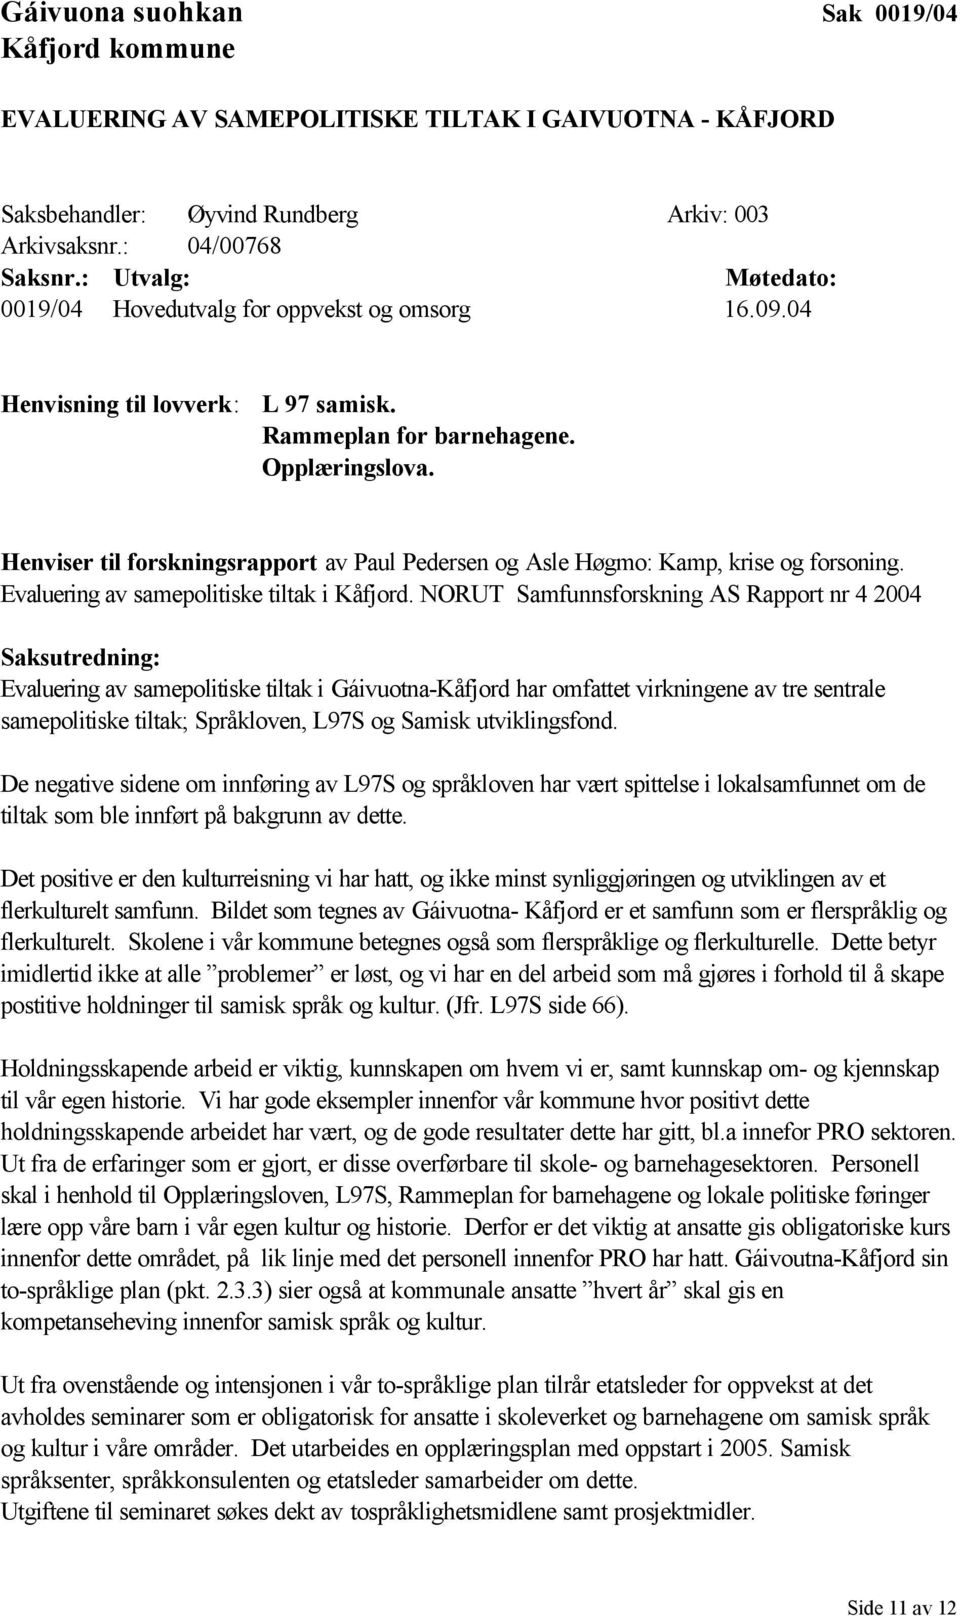 Henviser til forskningsrapport av Paul Pedersen og Asle Høgmo: Kamp, krise og forsoning. Evaluering av samepolitiske tiltak i Kåfjord.